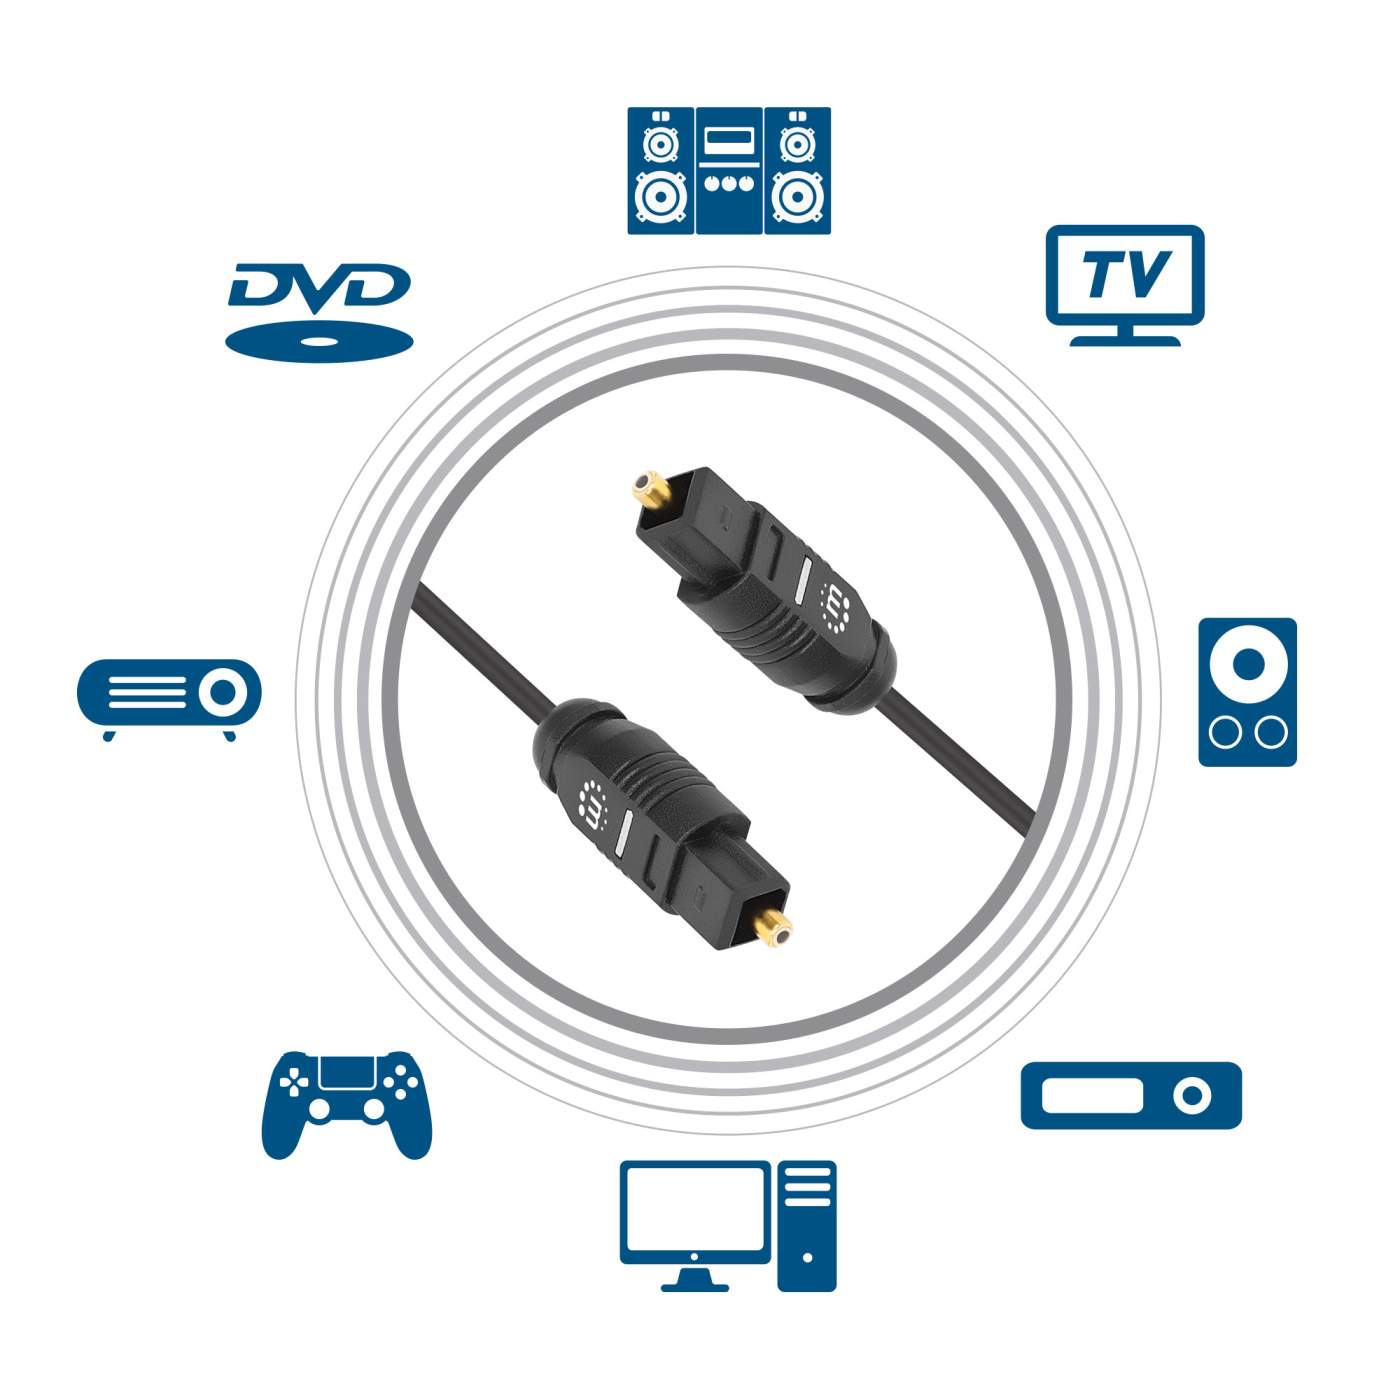 10ft Toslink Digital SPDIF Audio Cable - Digital Audio Cables (Toslink®), Cables